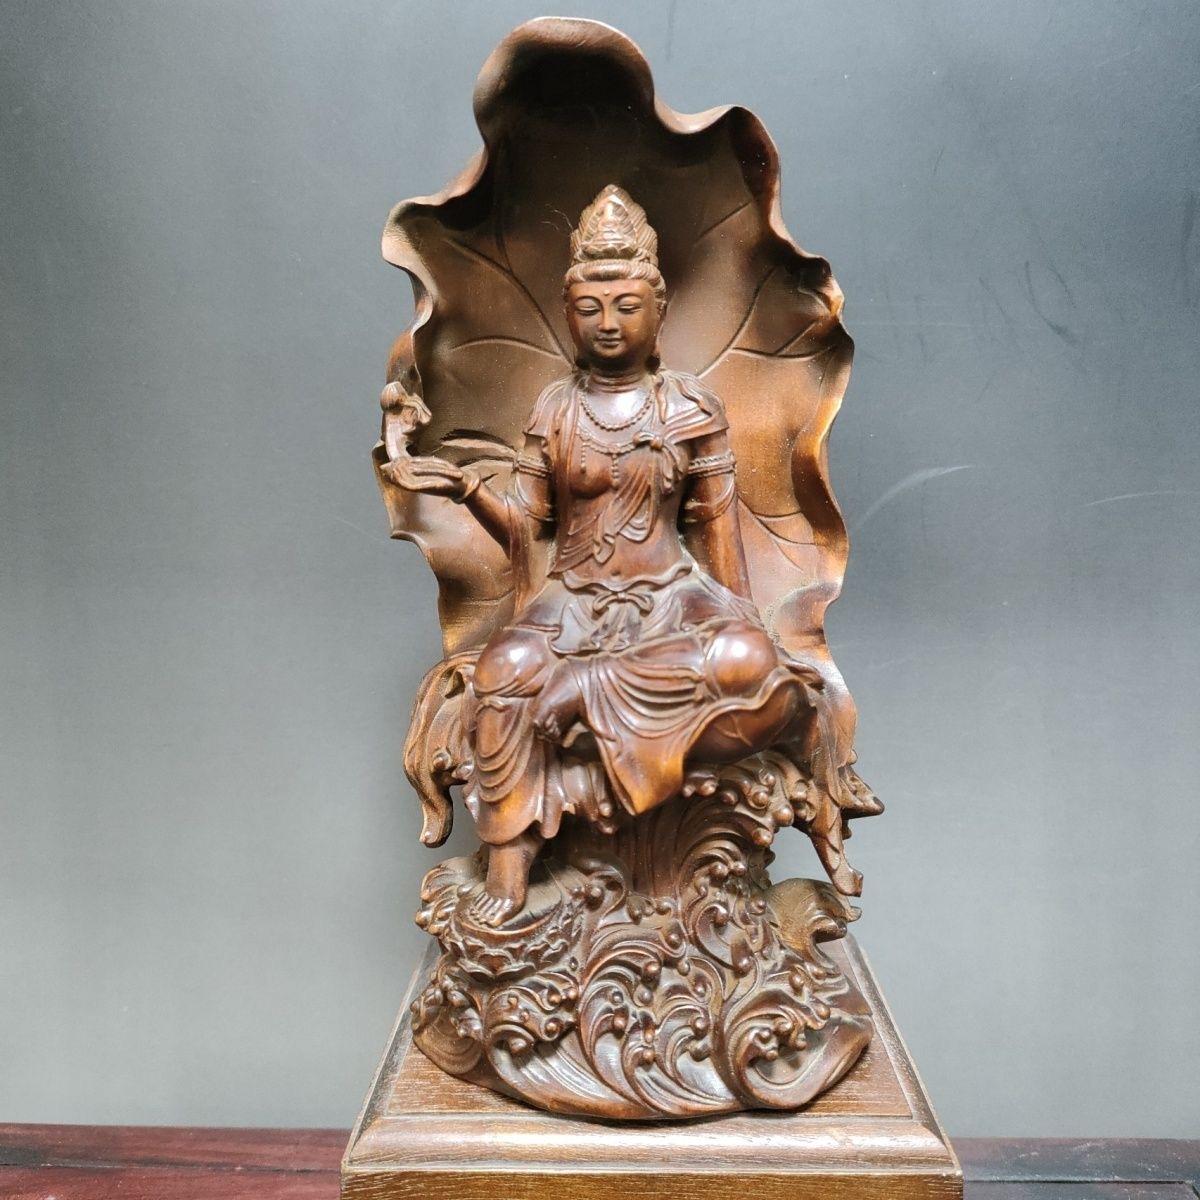 Cette statue de Bouddha chinois en bois ancien, assis sur le lotus, est une pièce de collection vraiment unique et spéciale.  

Détails de la statue de Bouddha :
Matériau : buis
Hauteur : 15cm
Diamètre : 8cm
Poids : 176 g
Originaire de Chine

Envoi